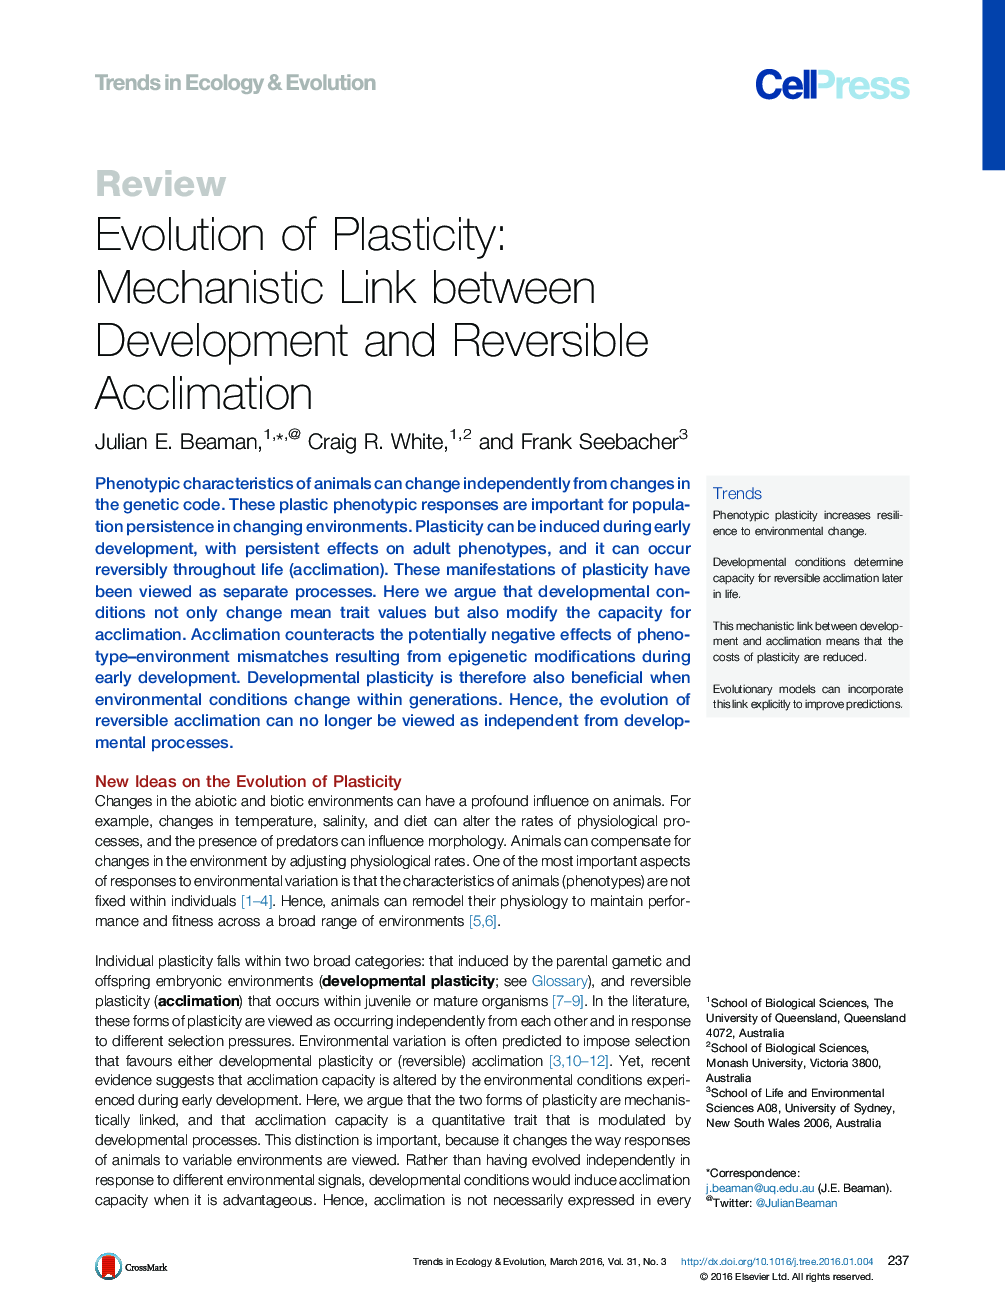 تکامل پلاستیسیته: لینک مکانیکی بین توسعه و خو کردنی